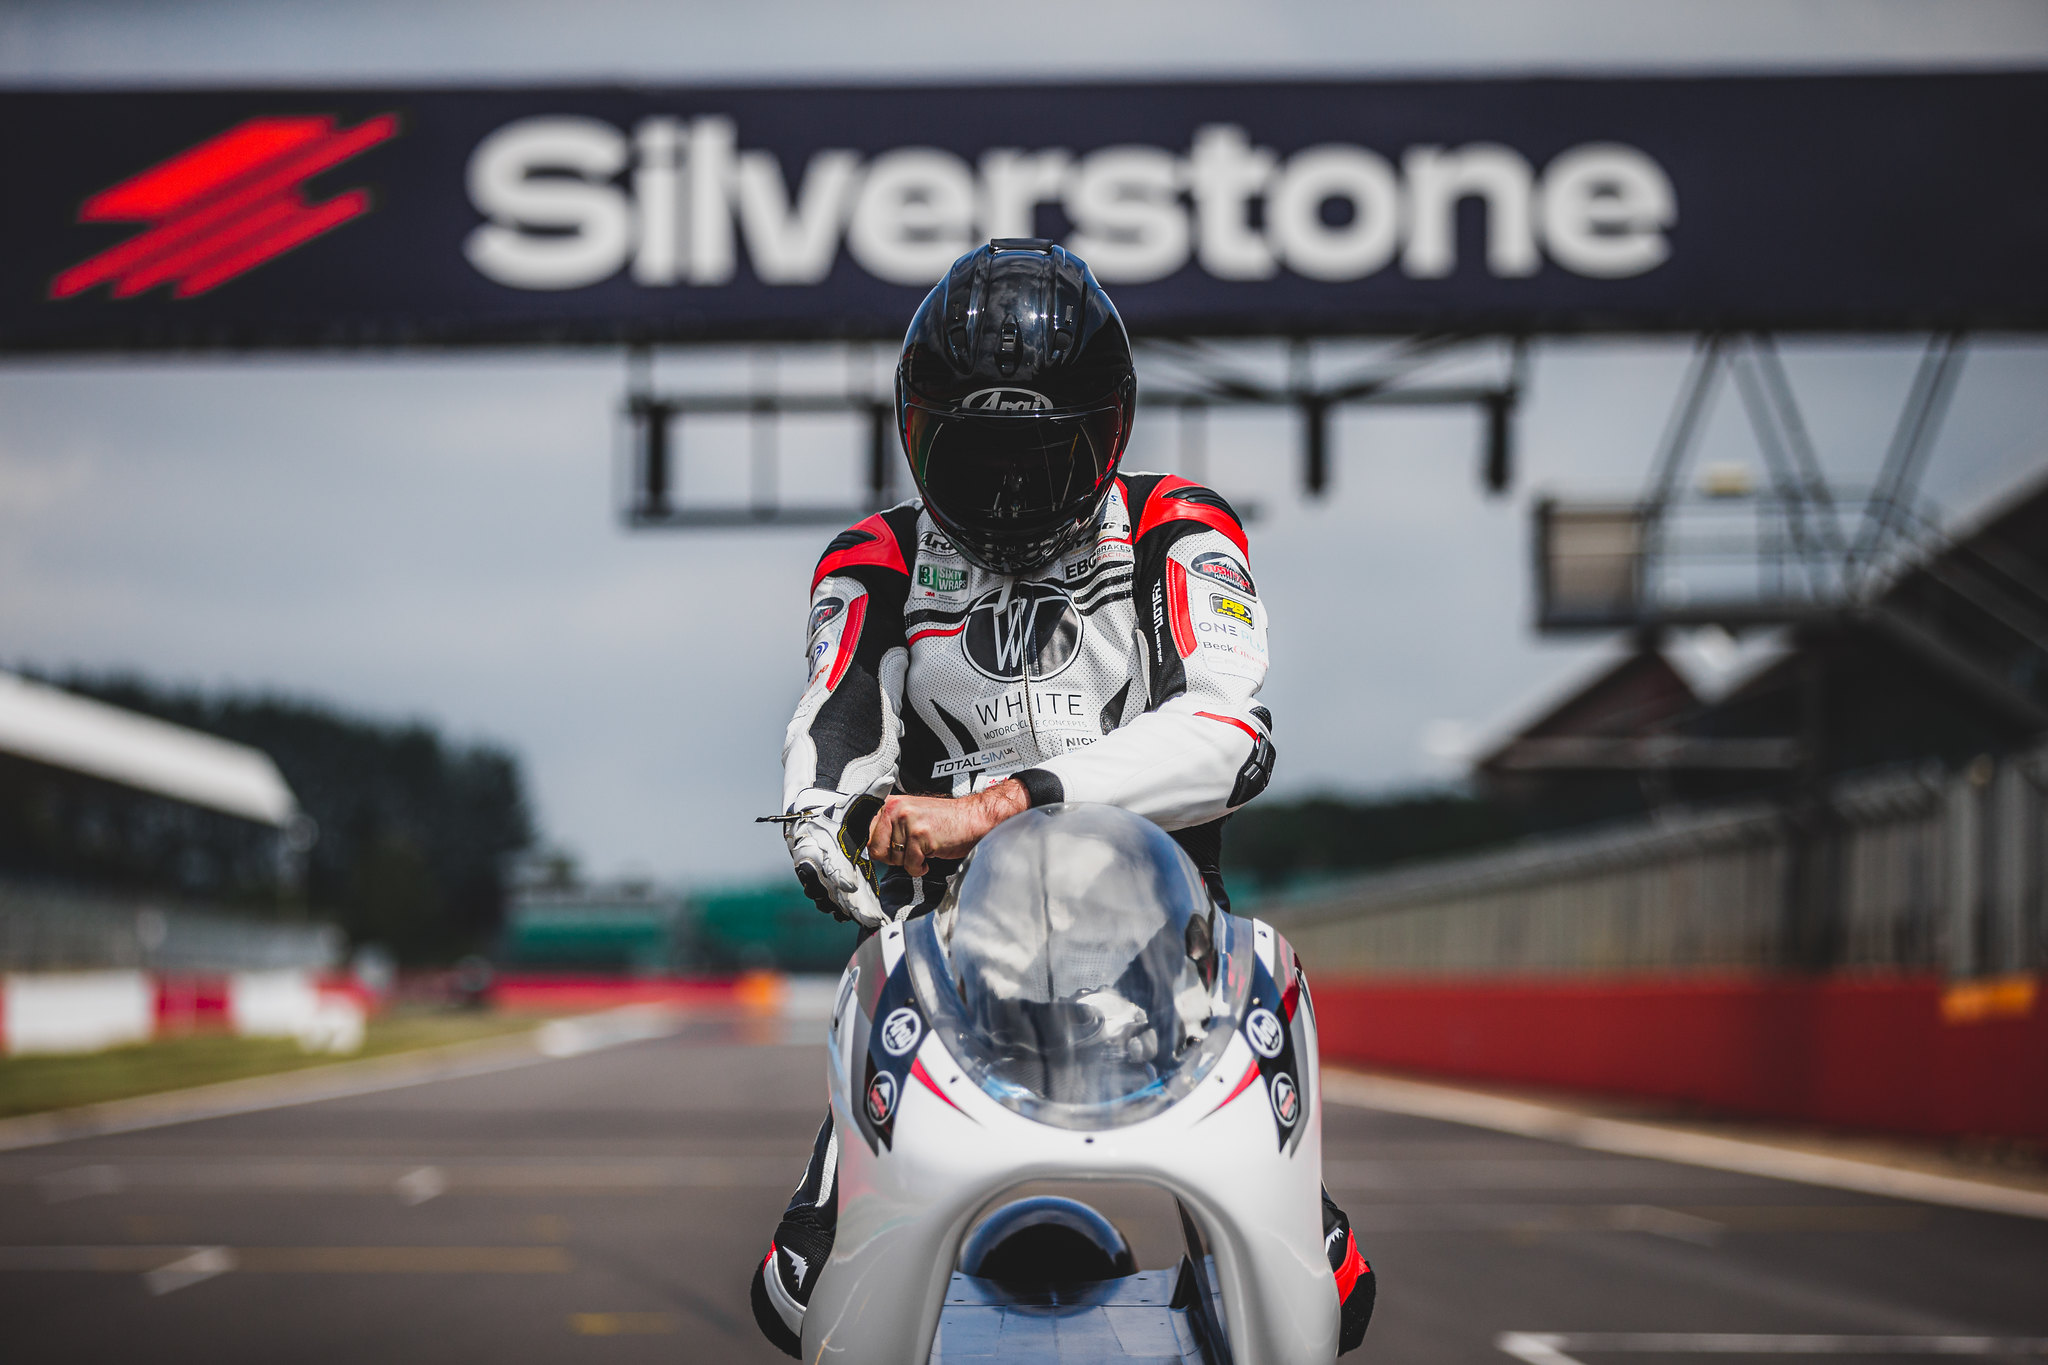 moto mais aerodinamica do mundo teve evento cancelado em silverstone